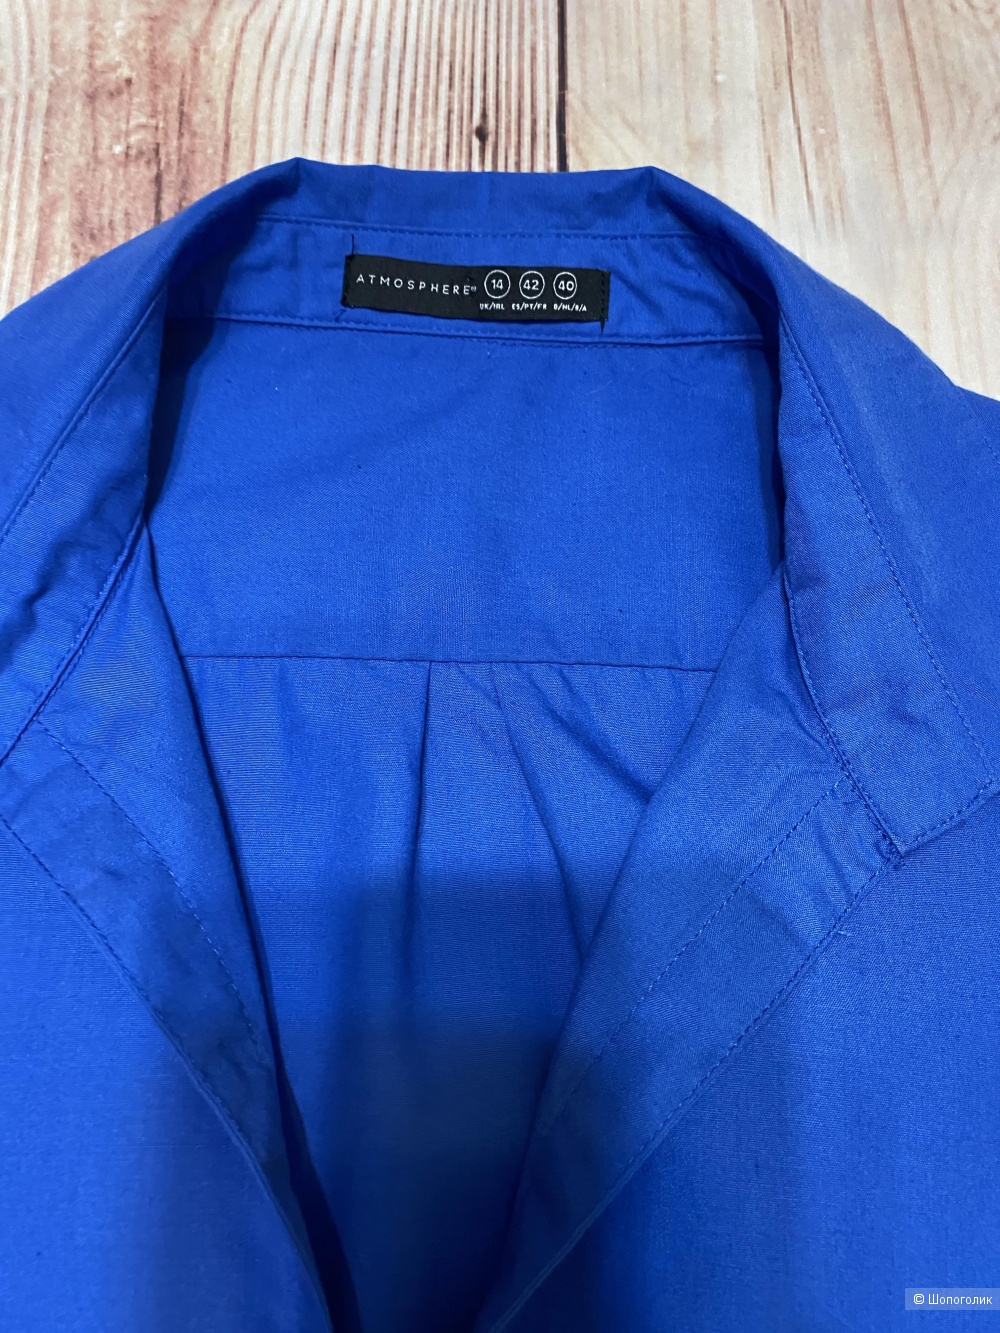 Синяя блузка-рубашка. Размер 46-48